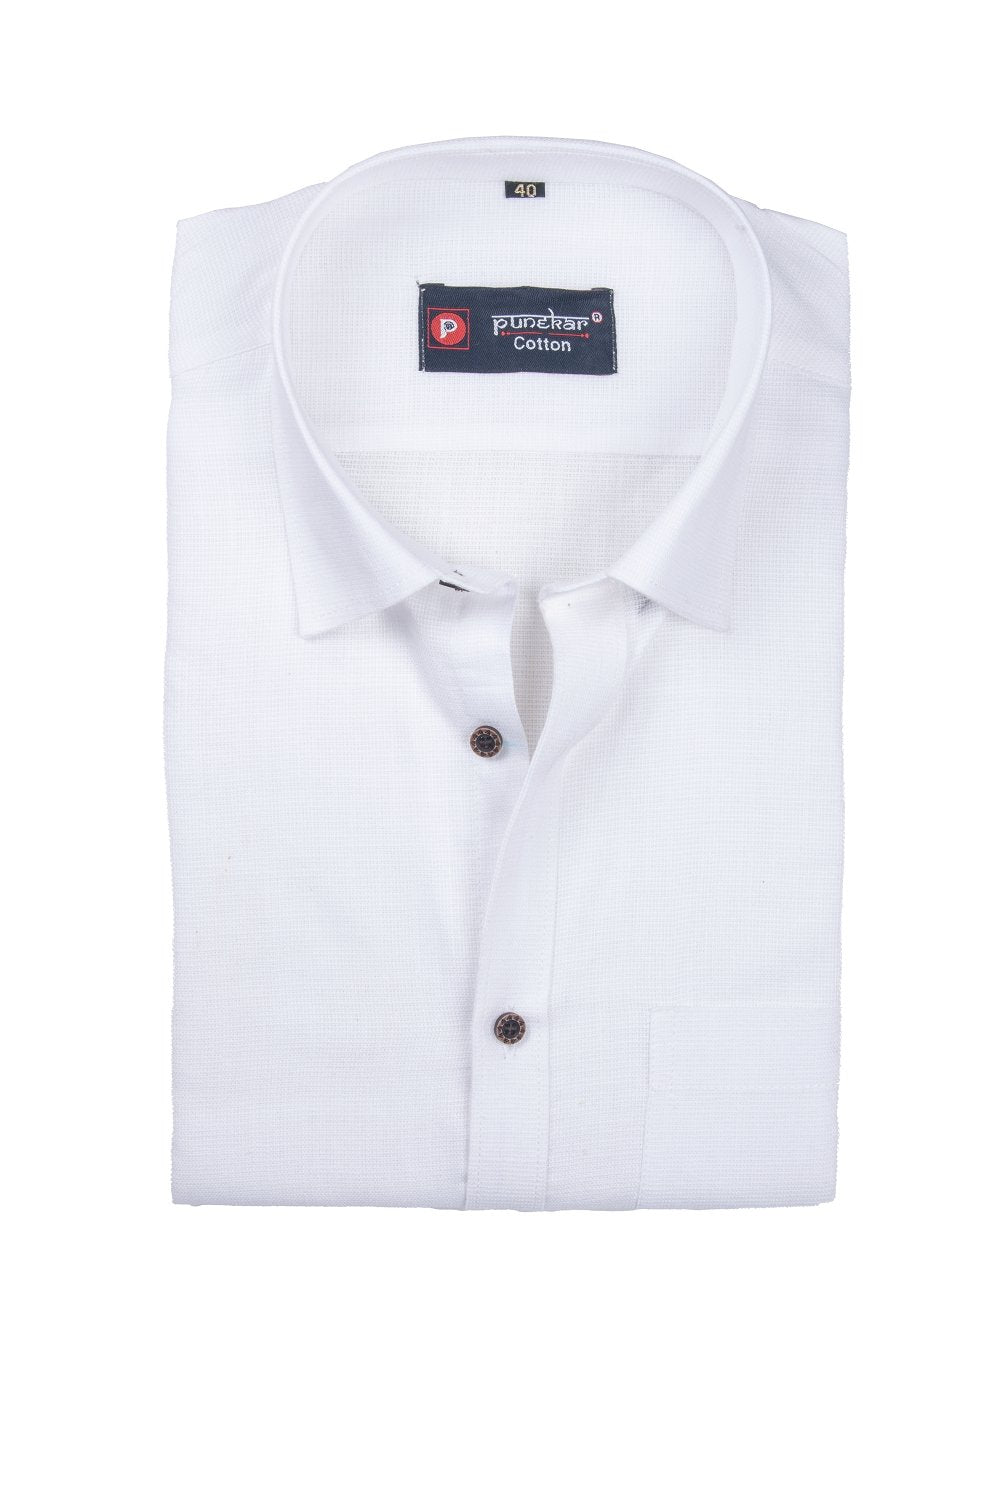 Punekar Cotton White Color Silky Linen Cotton Shirt for Men&